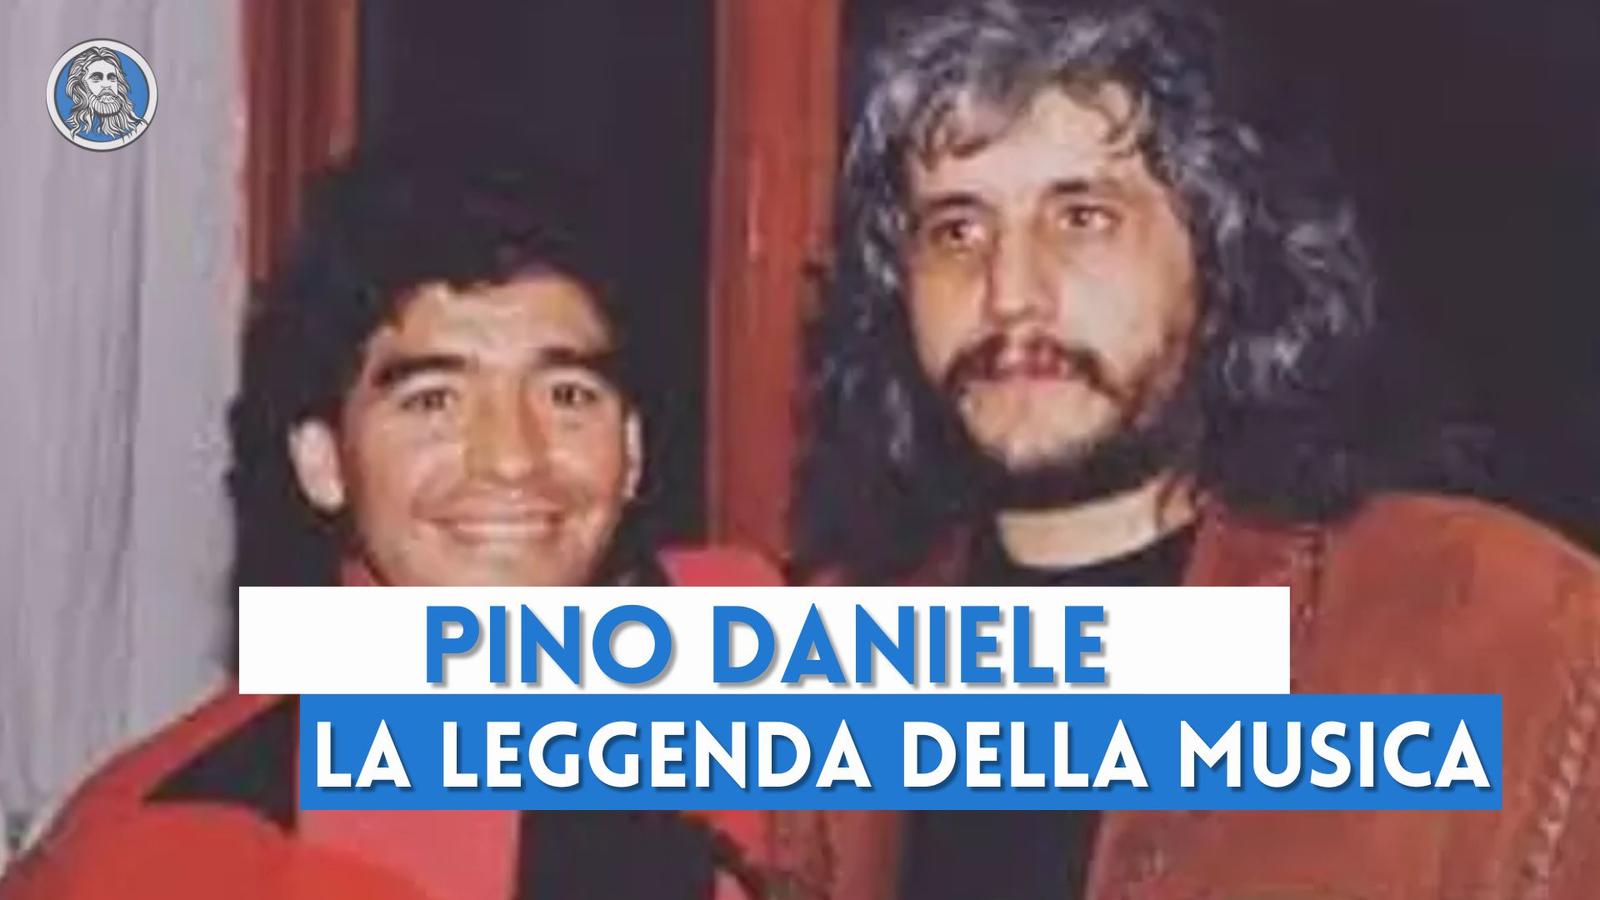 Pino Daniele, la leggenda che segnò il "prima" e il "dopo" nella musica